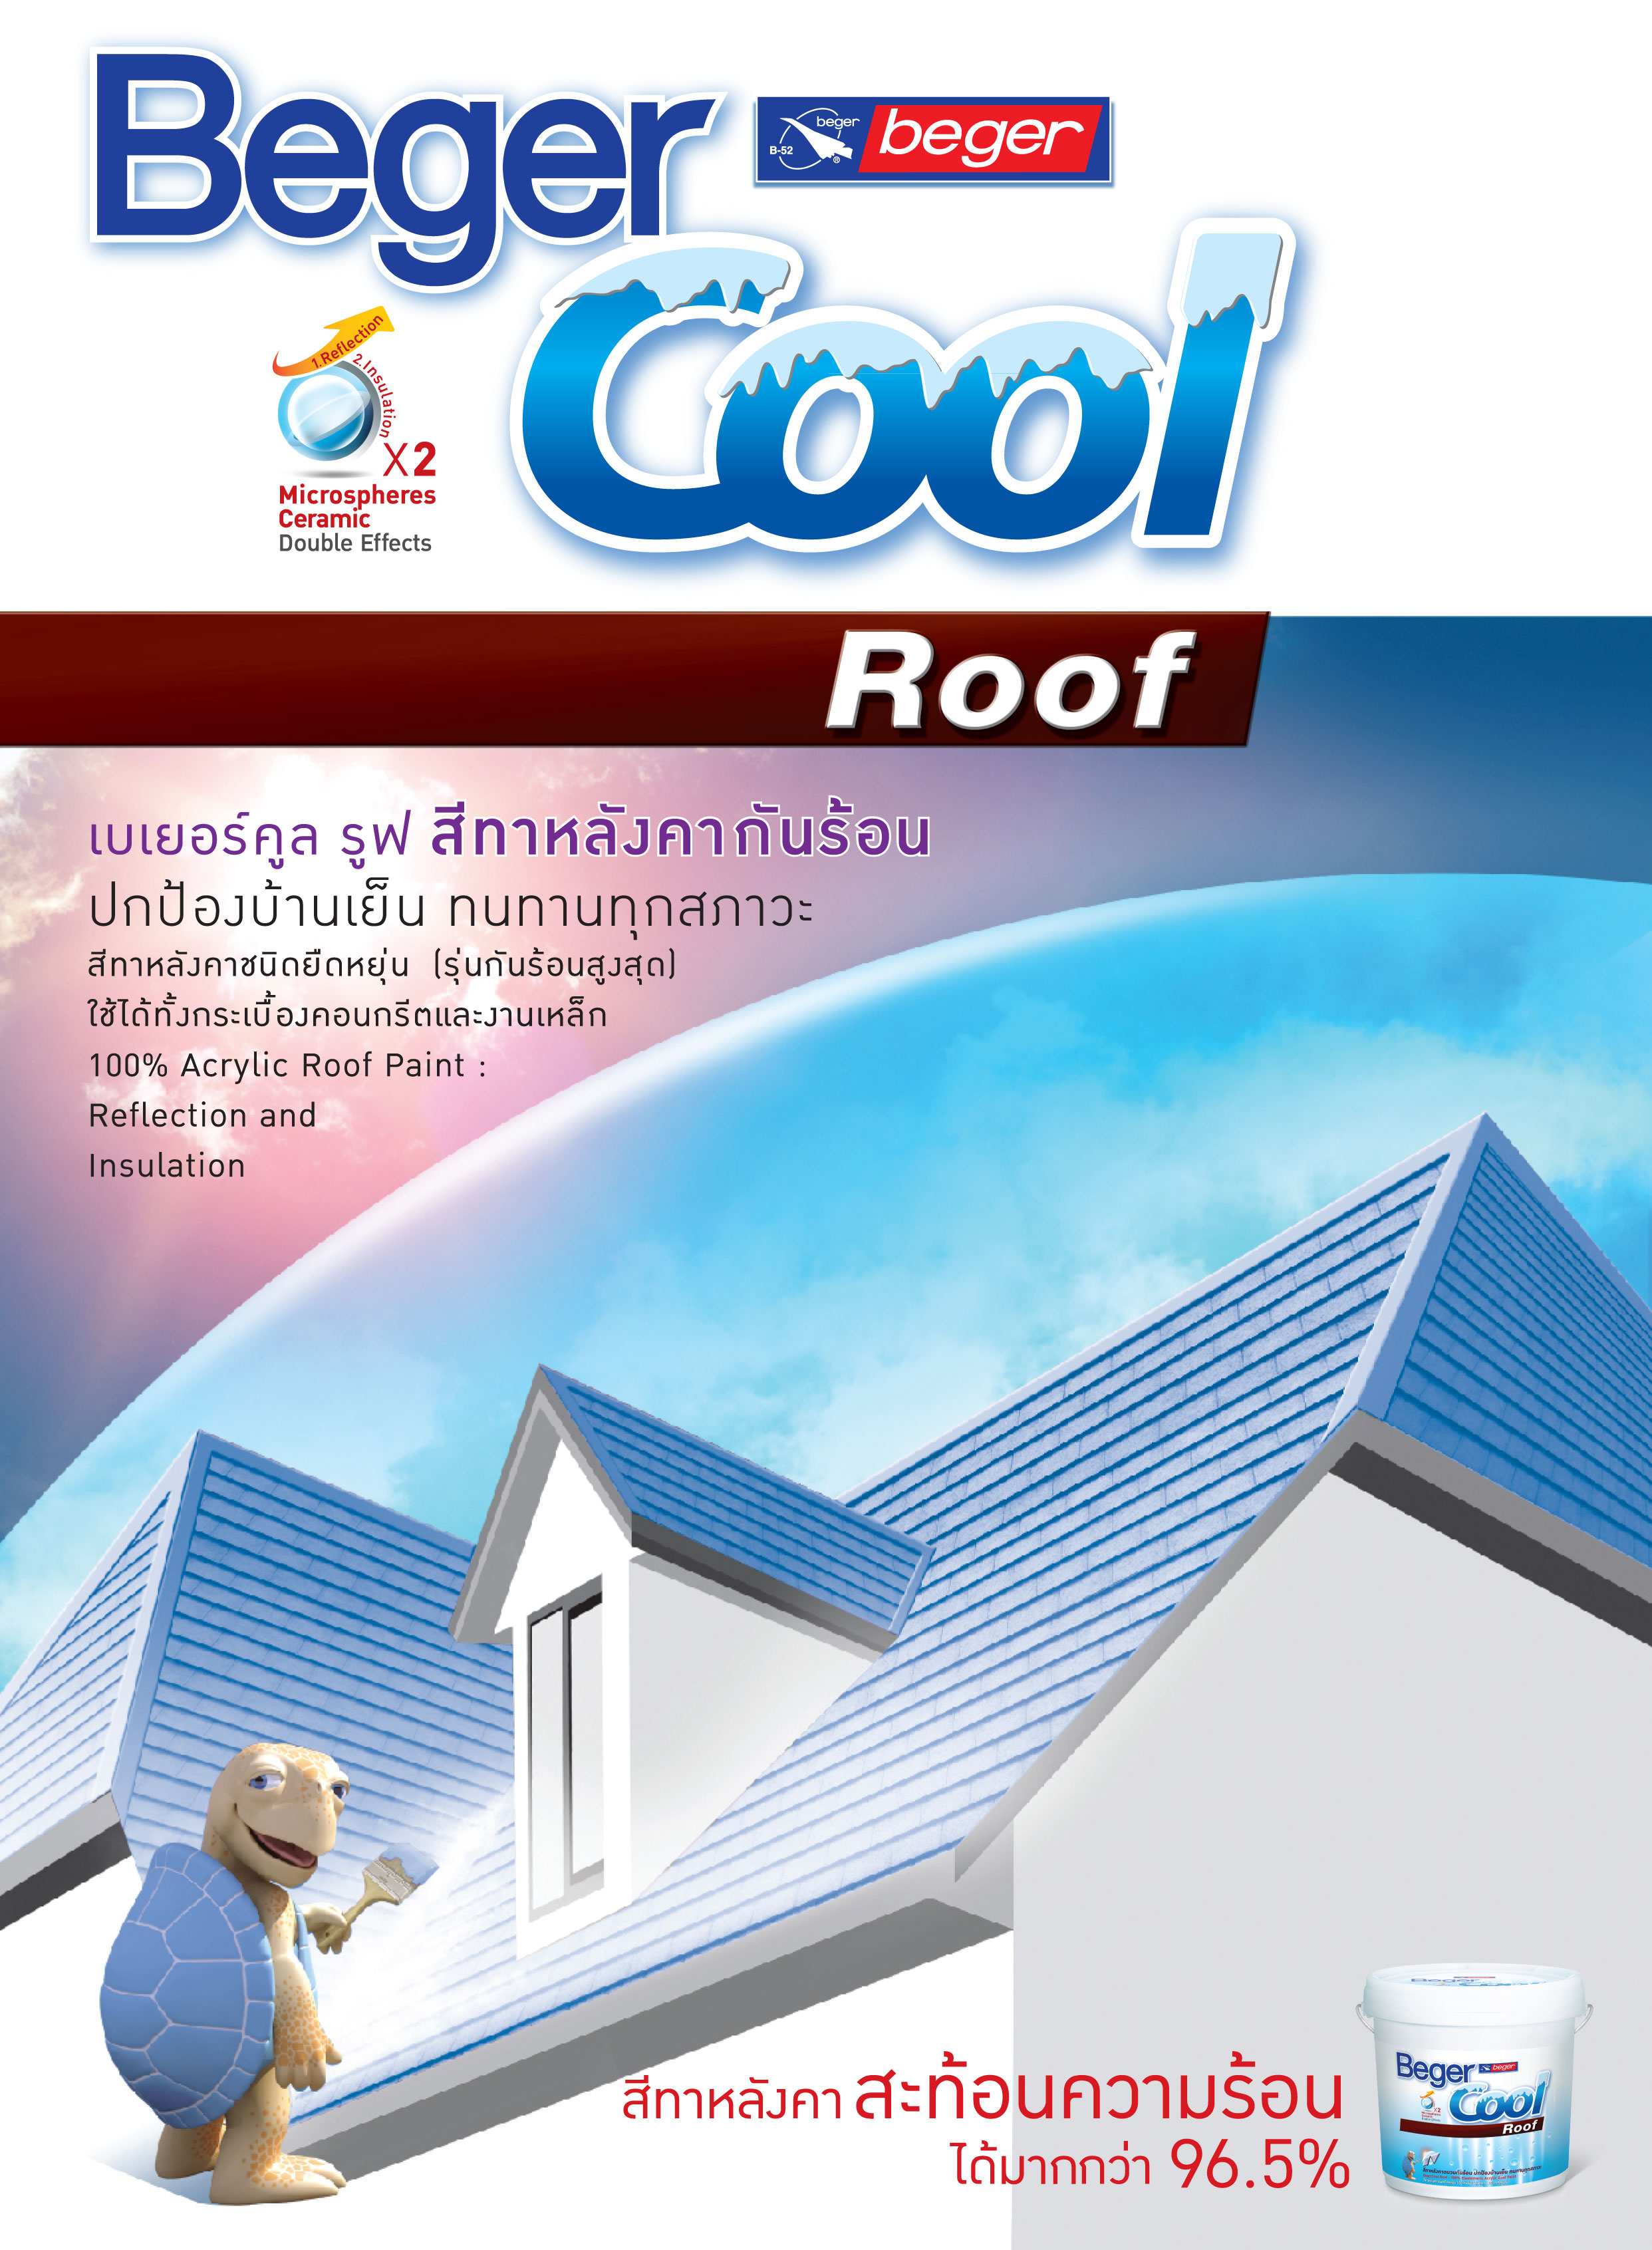 เบเยอร์คูล รูฟ / BegerCool Roof